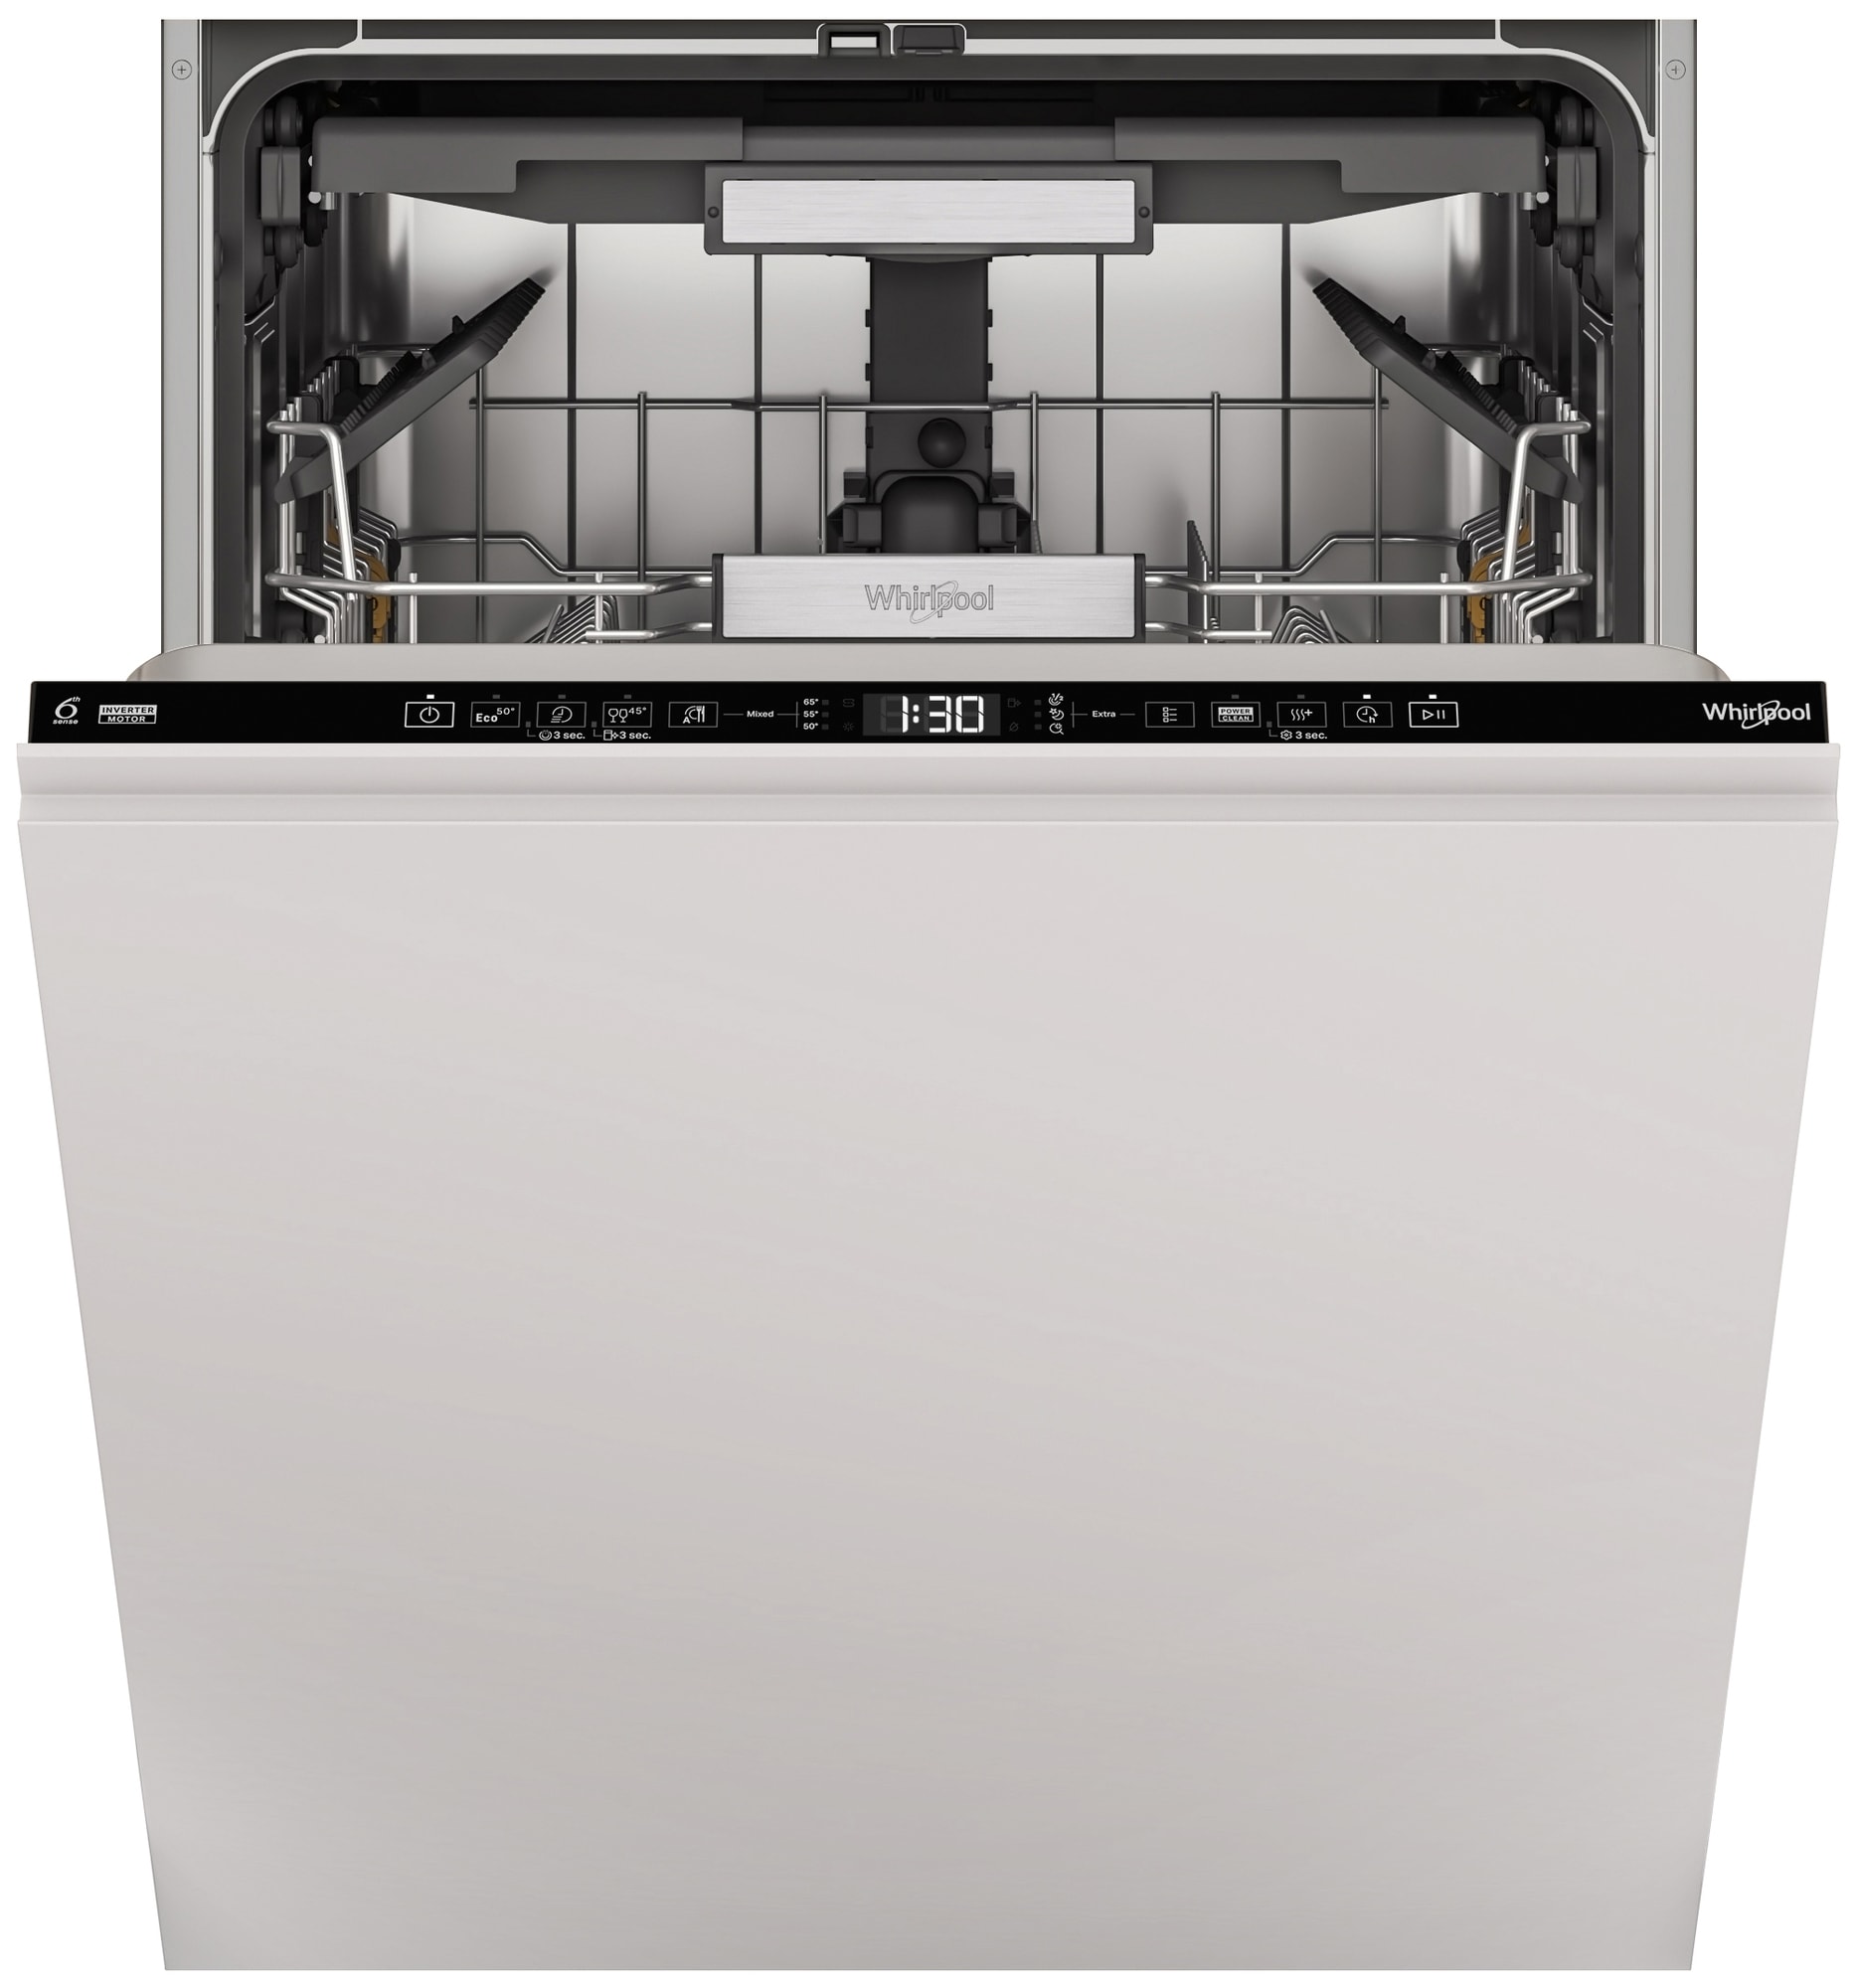 Whirlpool opvaskemaskine W7I HT40 TS, fuldt integreret | Elgiganten